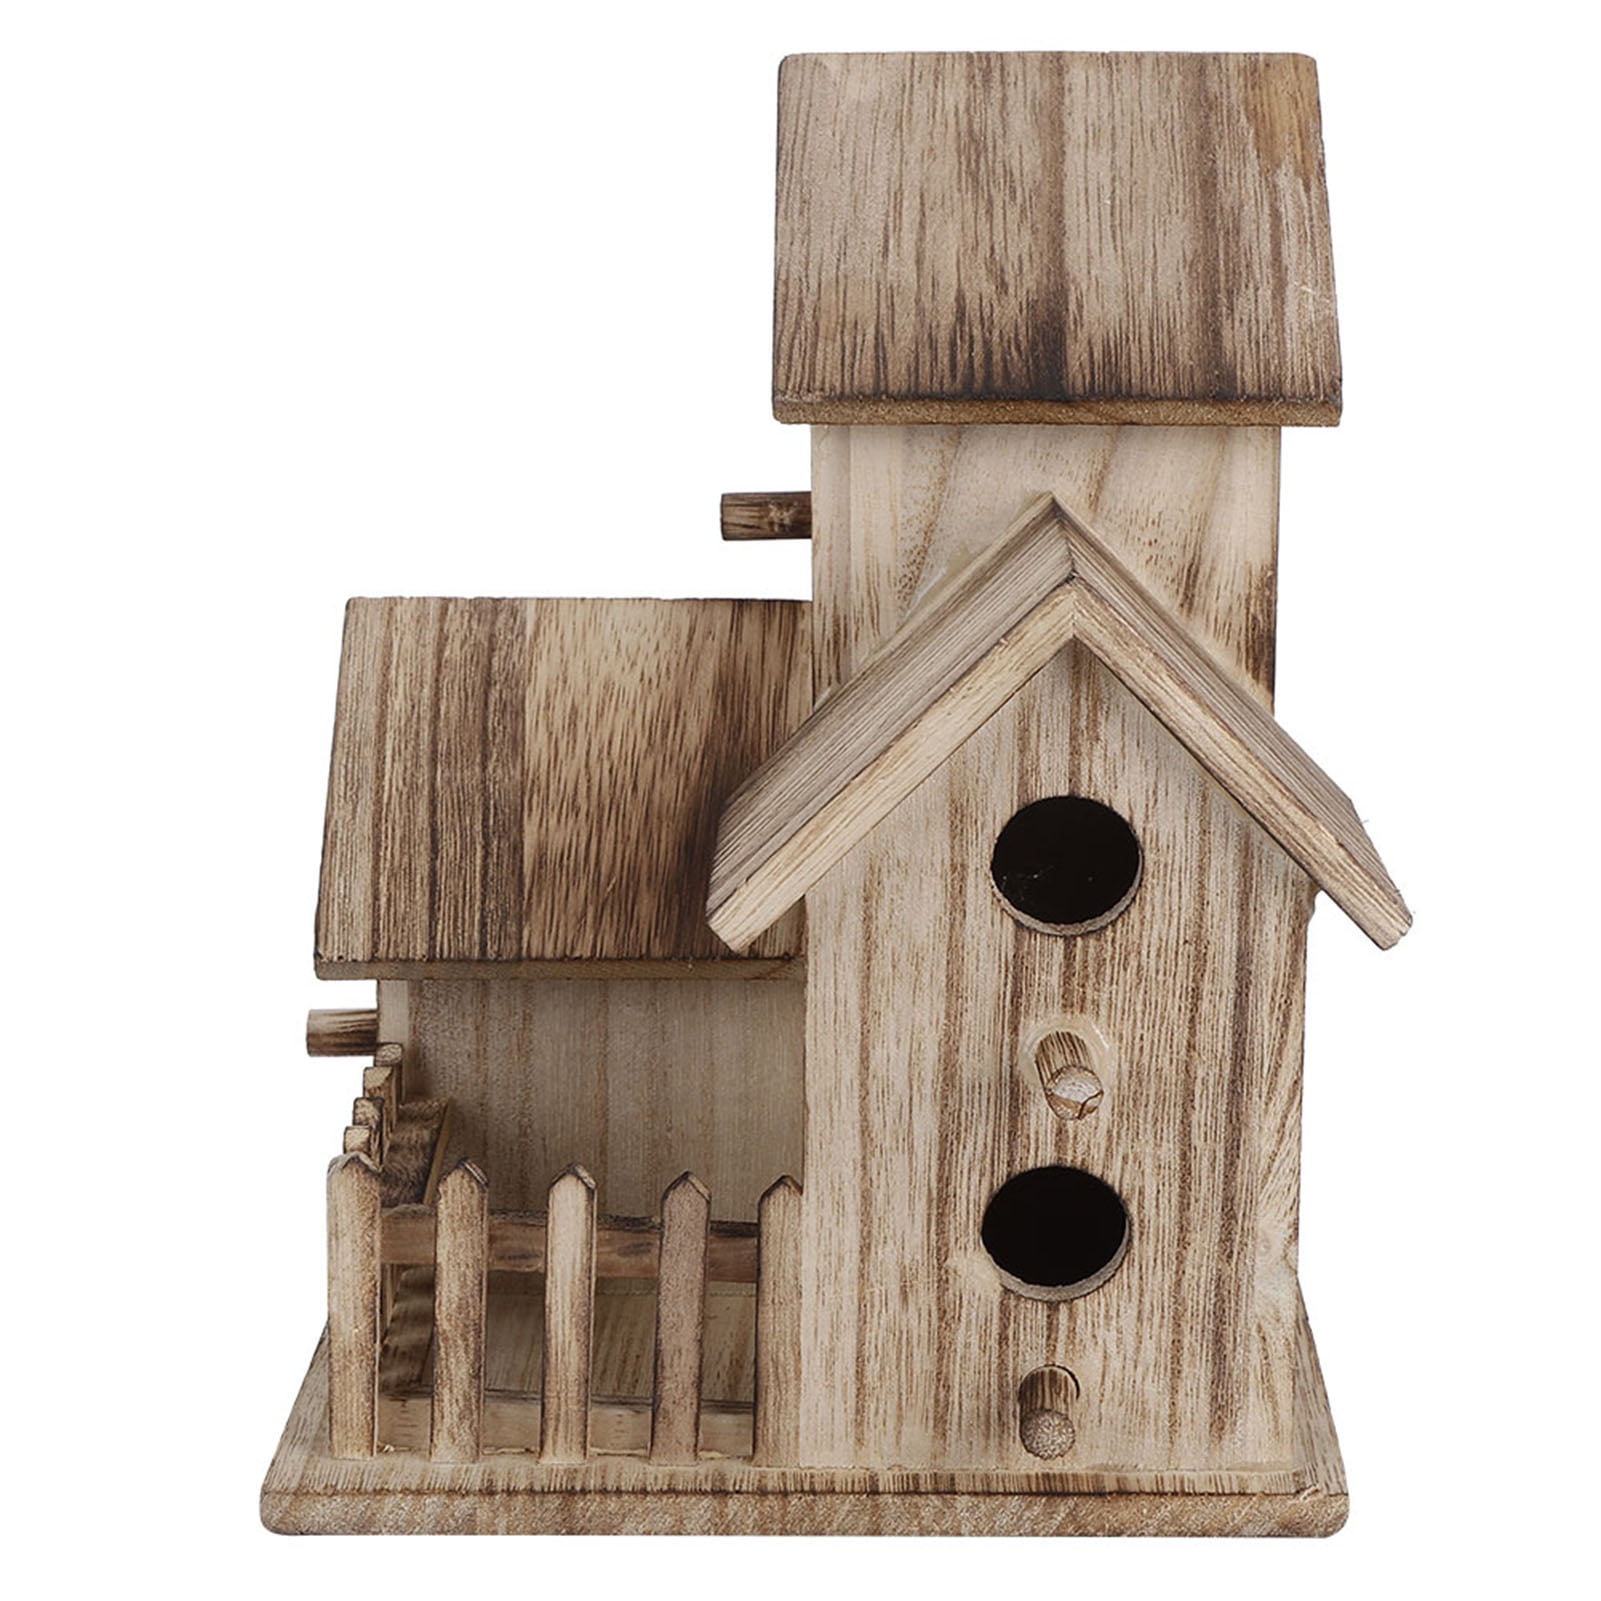 Wooden Birdhouse Small Outdoor Garden Birds Nesting Box Bird House Pets Supplies 